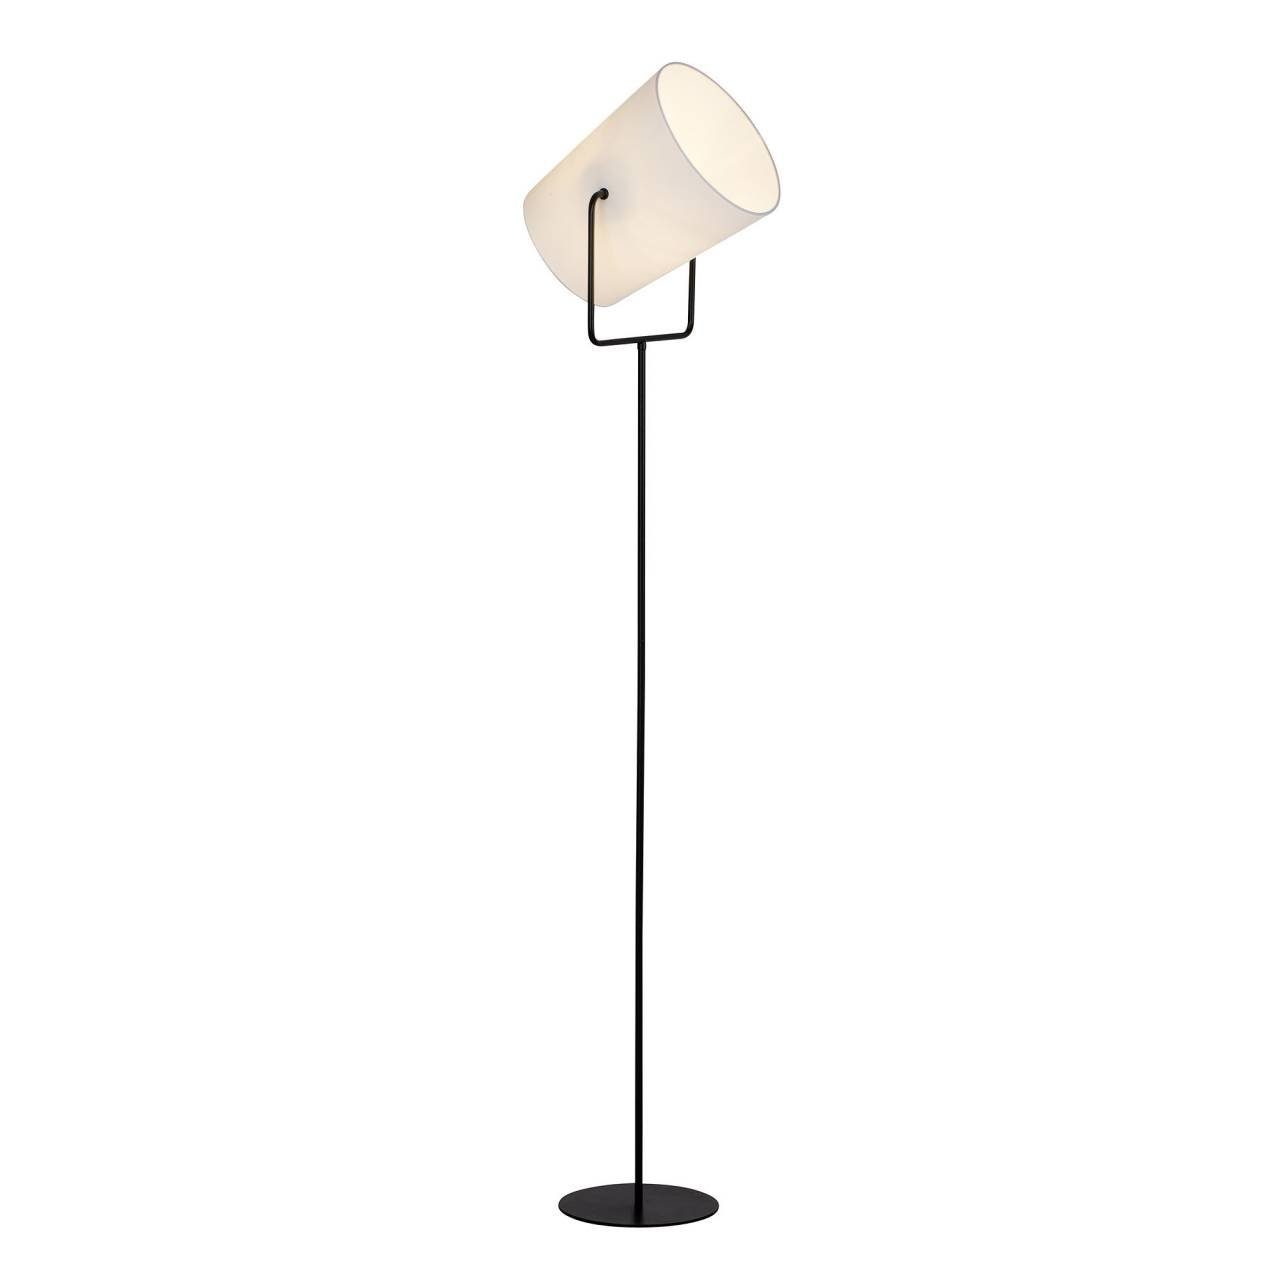 Brilliant Stehlampe Bucket, schwarz/weiß 1x geeign 1flg Lampe 60W, A60, Standleuchte Bucket E27